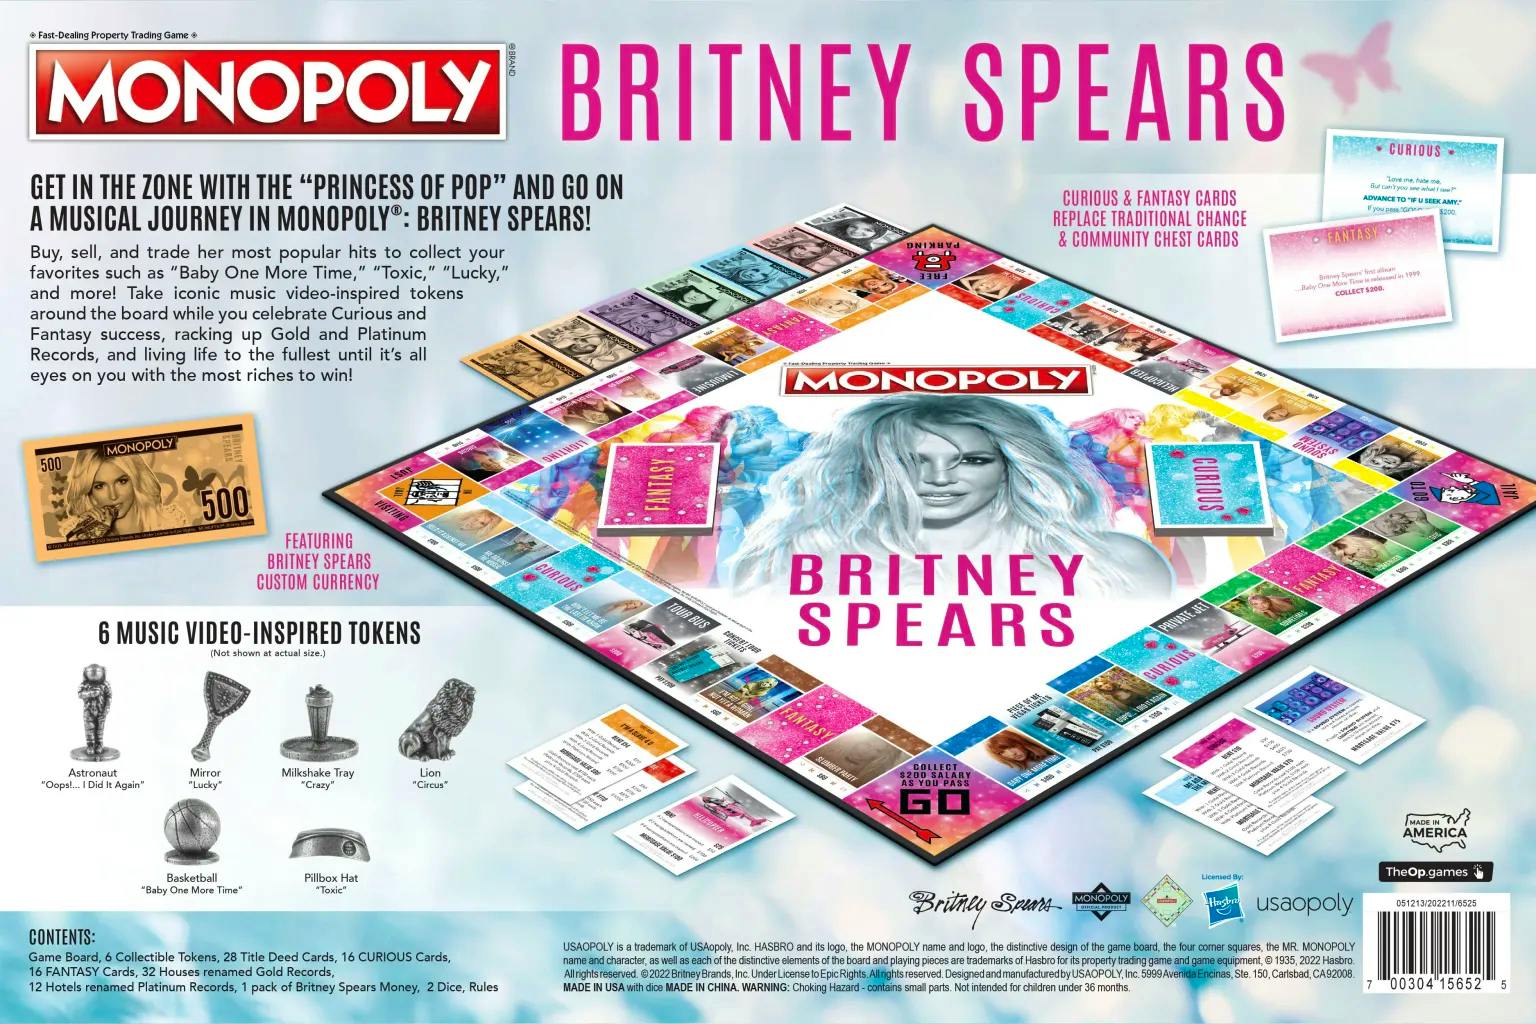 Toxisch, absolut crazy und etwas für Babys: Monopoly für Spears-Fans.  (Credit: The Op Games) 